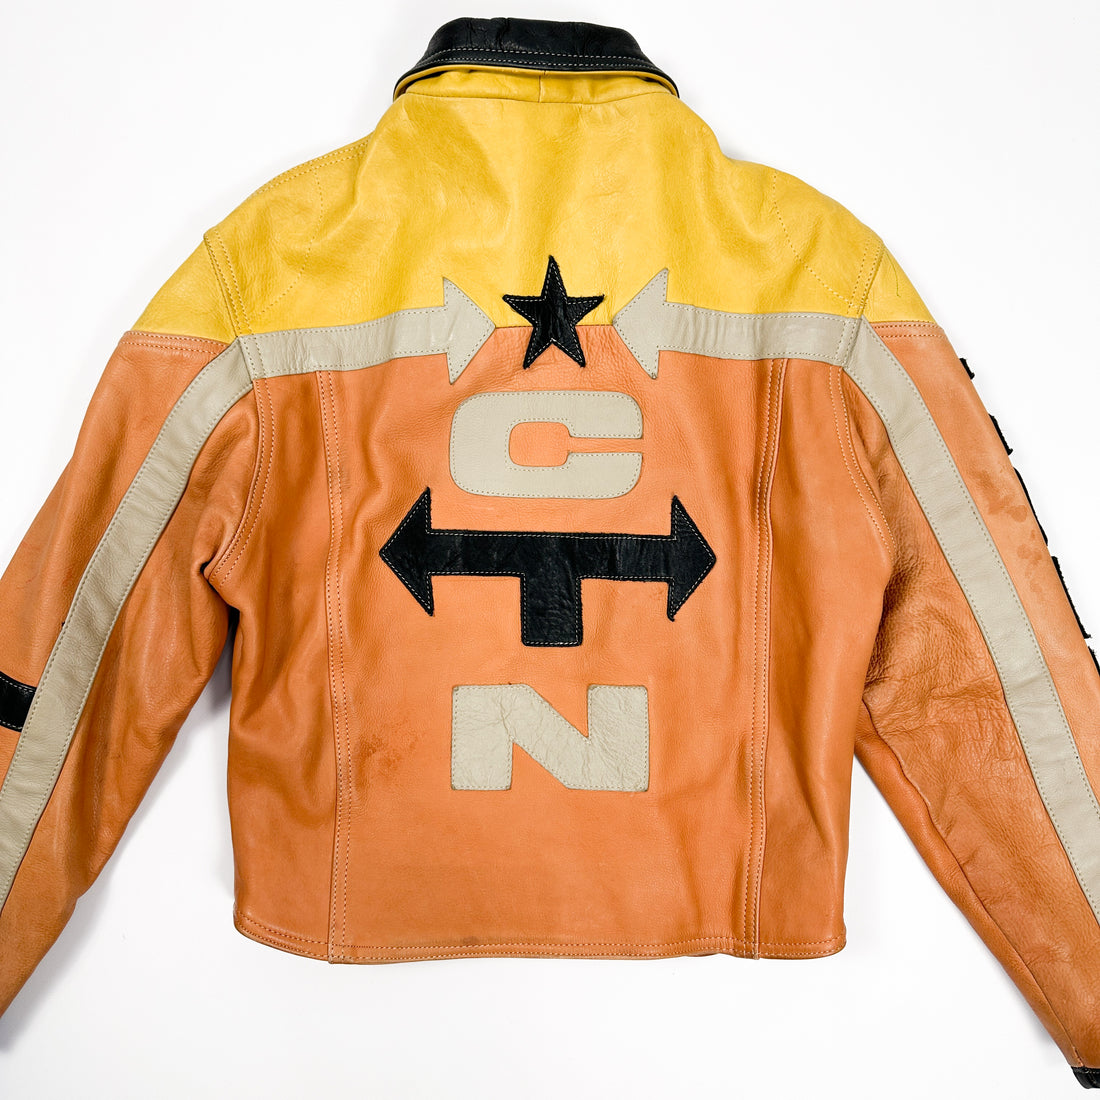 Zeemeeuw rok bezig Chyston Yellow & Orange Racing Leather Jacket 1990's – Vintagetts